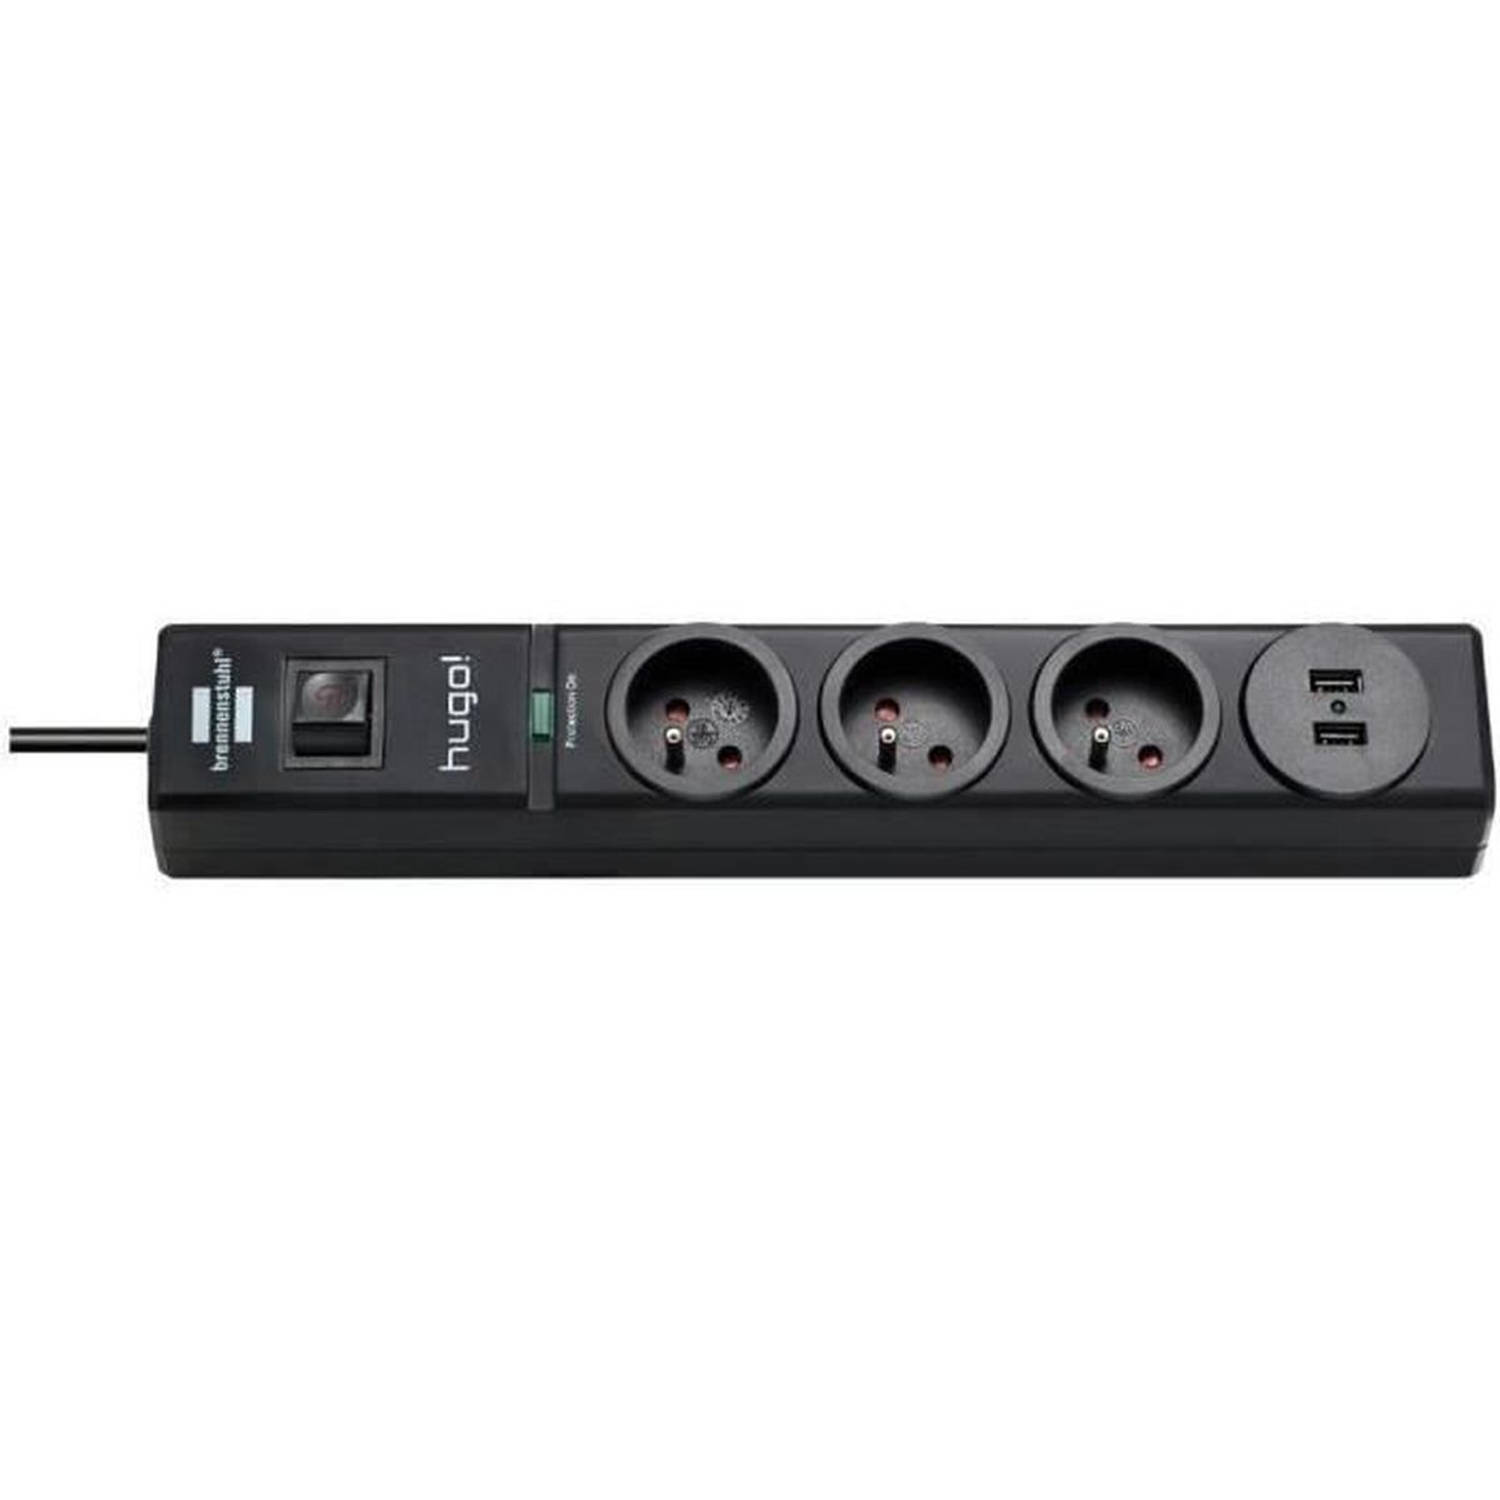 BRENNENSTUHL Power strip hugo! 3 uitgangen en 2 USB-uitgangen met overspanningsbeveiliging - Zwart